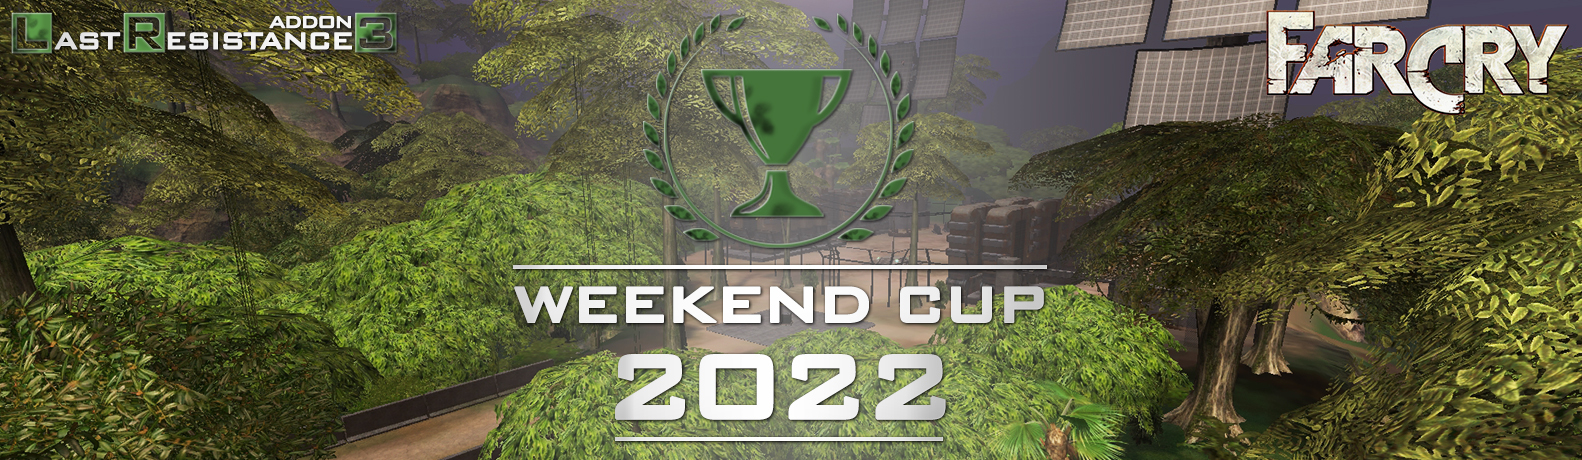 LRv3_Weekend_Cup_2022.jpg